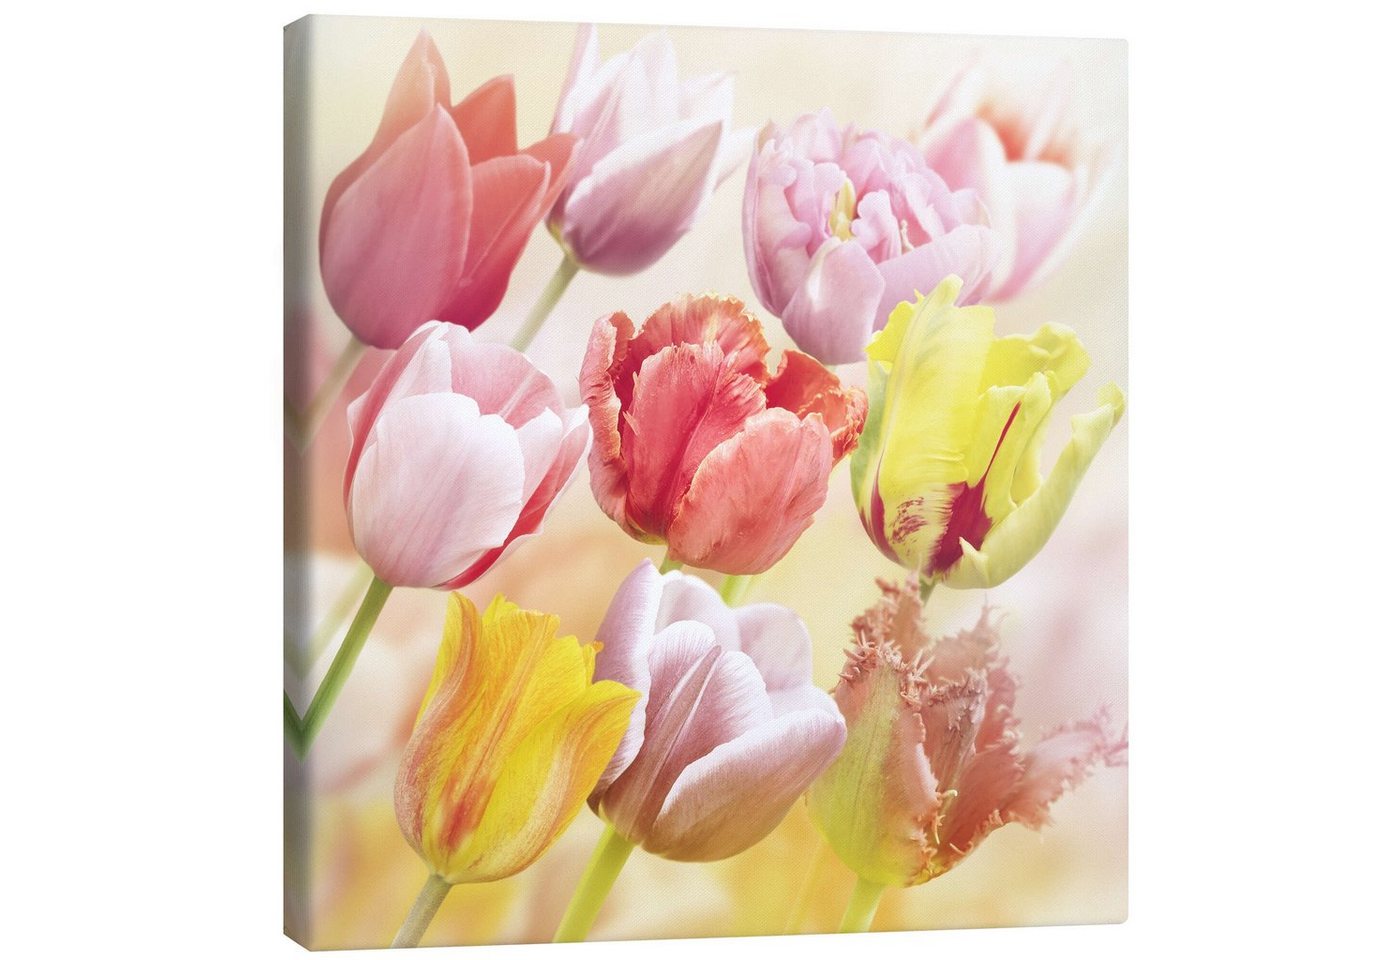 Posterlounge Leinwandbild Editors Choice, Verschiedene Tulpen, Fotografie von Posterlounge